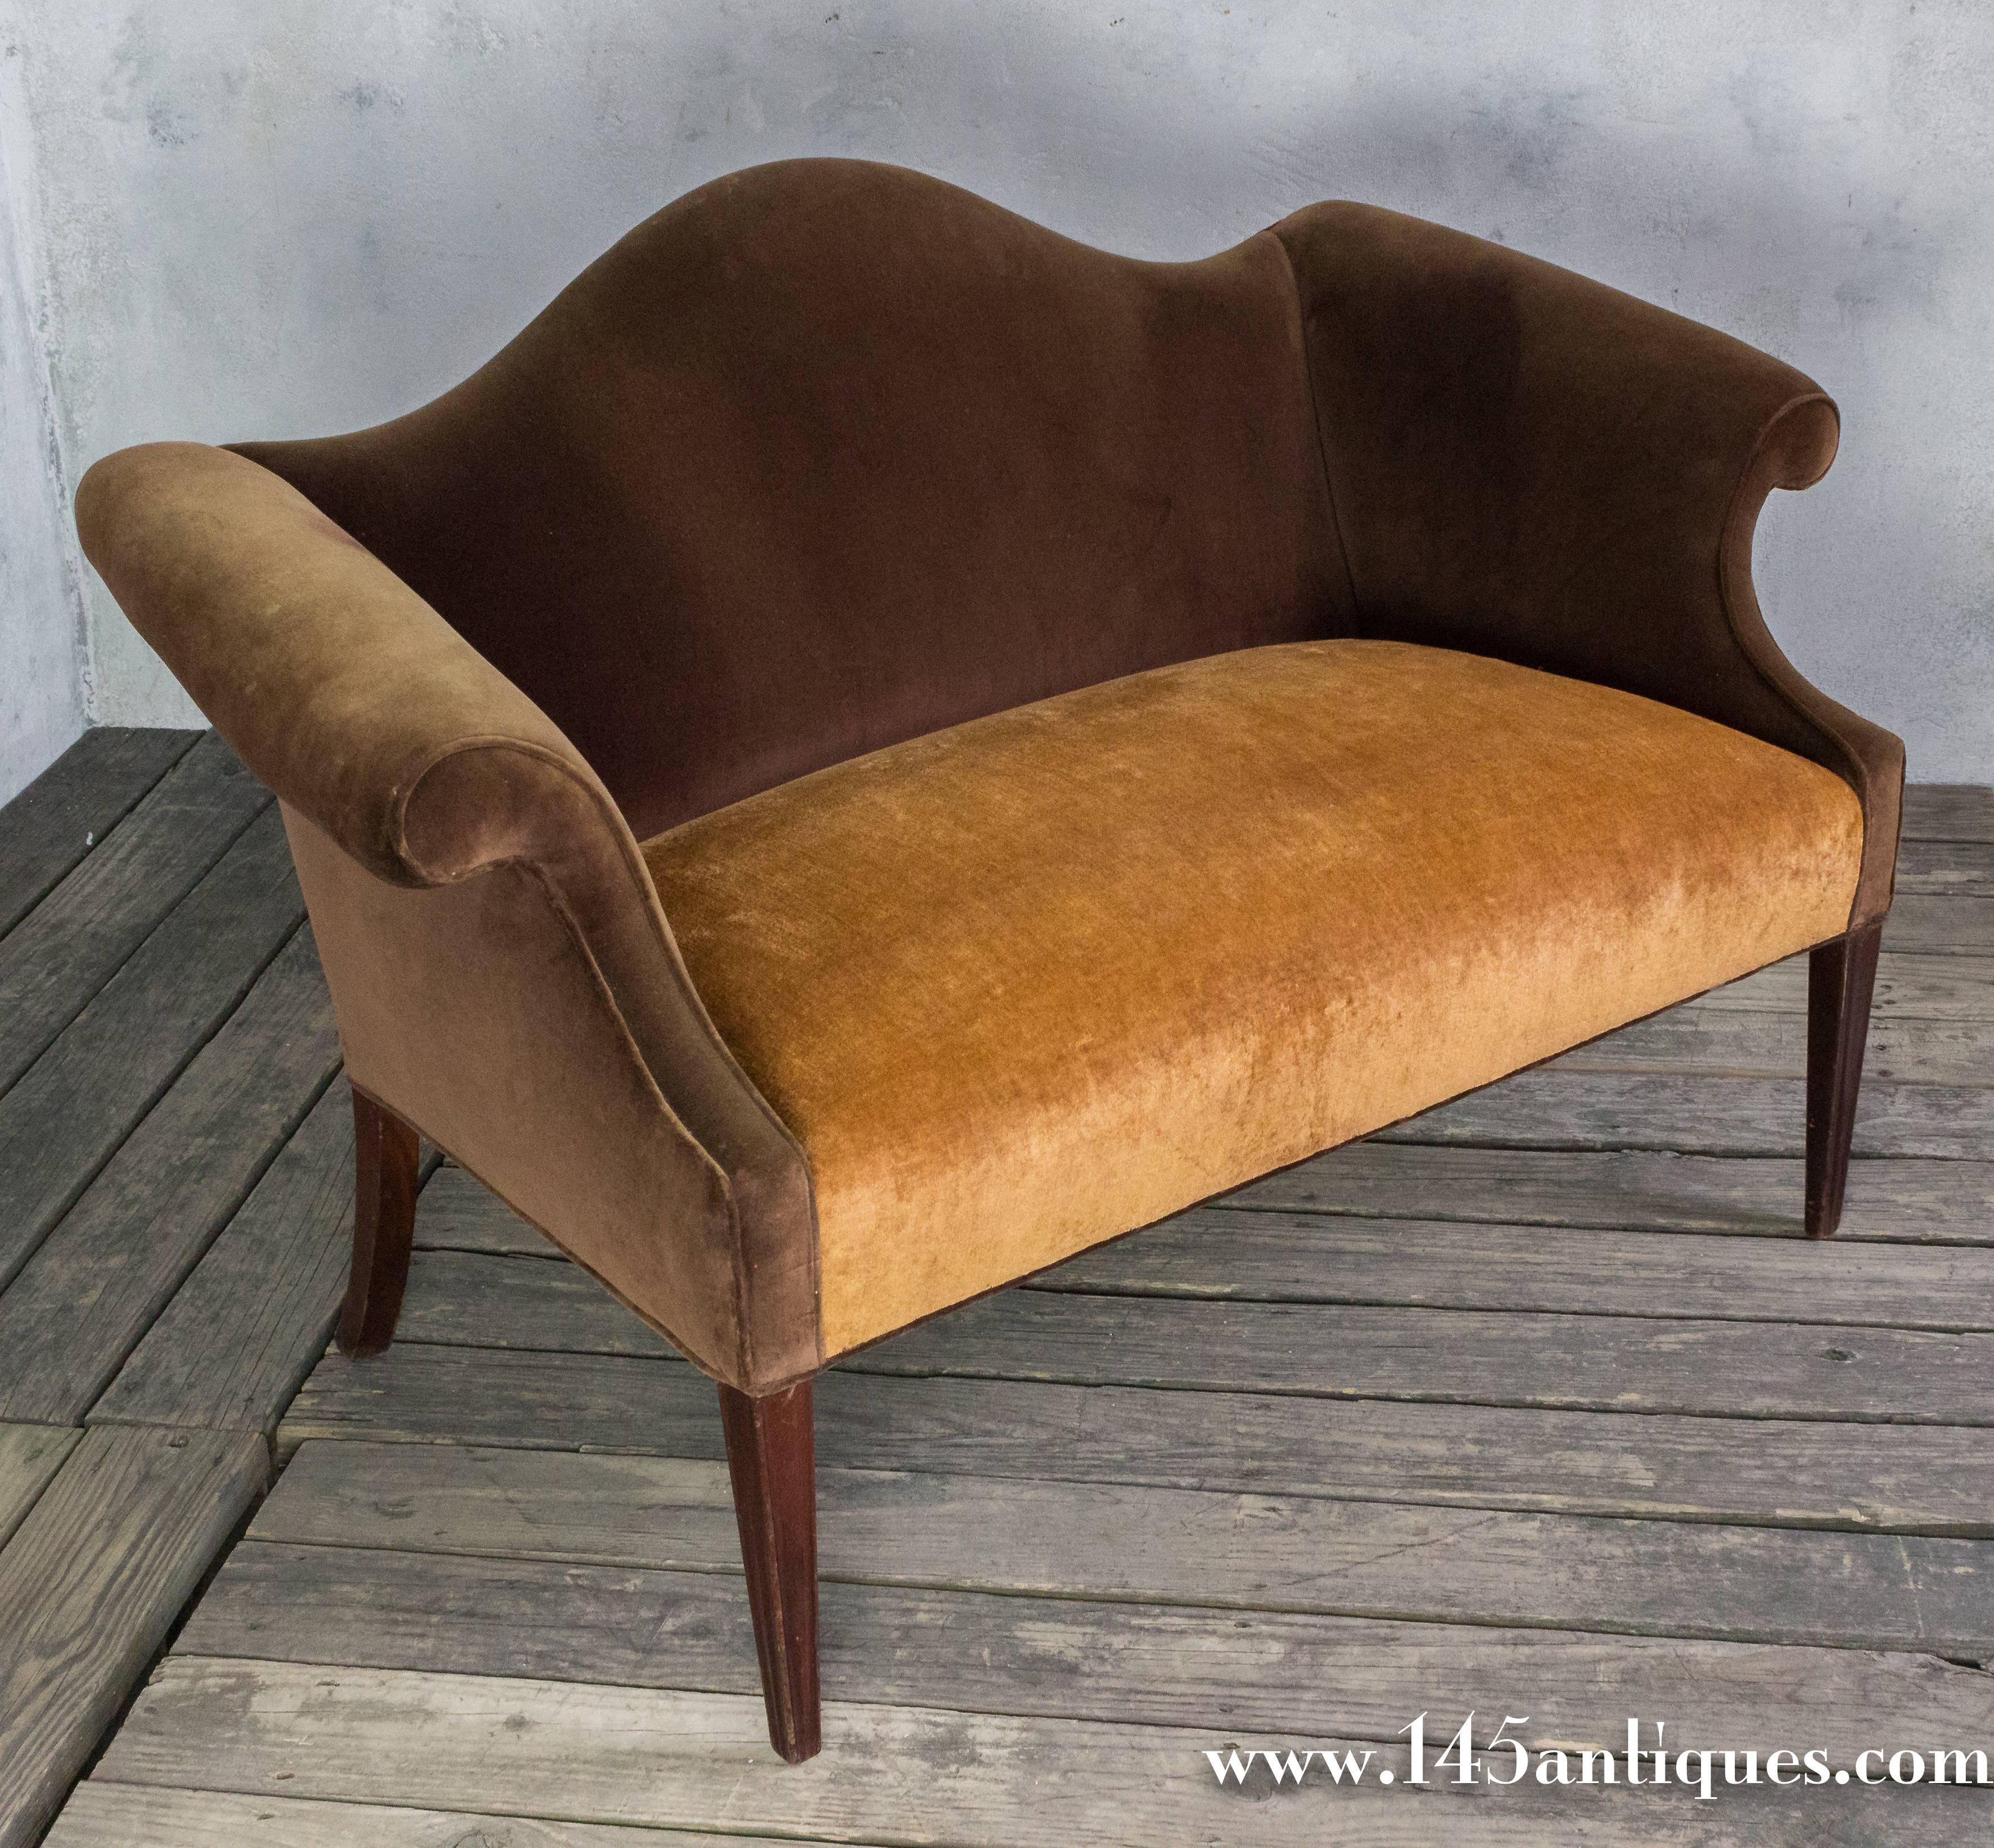 1920s American sette upholstered in brown velvet.